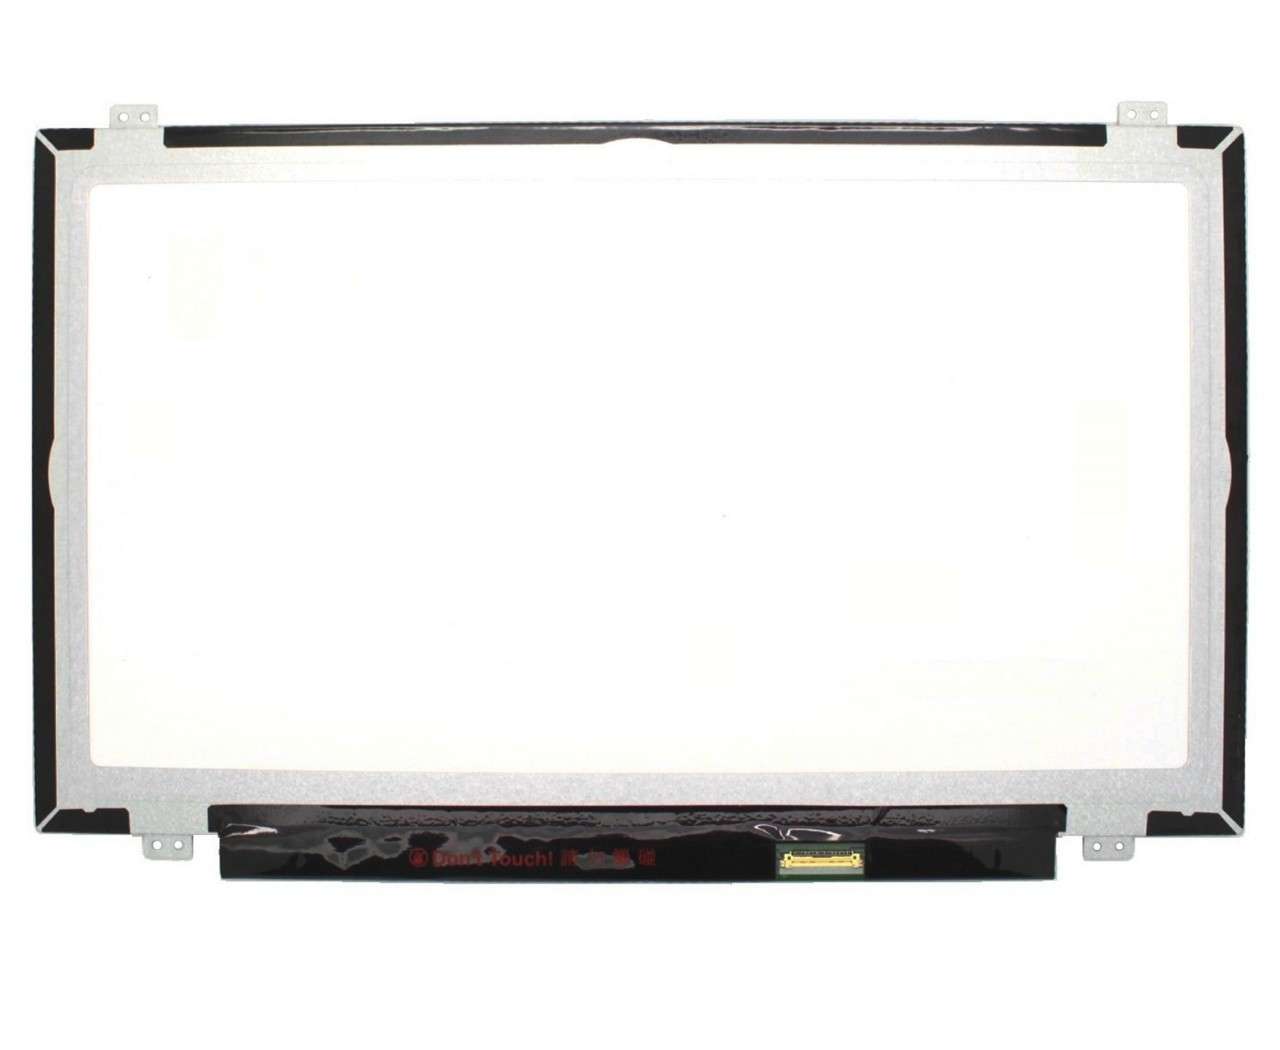 Display laptop LG LP140WF6-SPD1 Ecran 14.0 1920×1080 30 pini eDP imagine 2021 LG